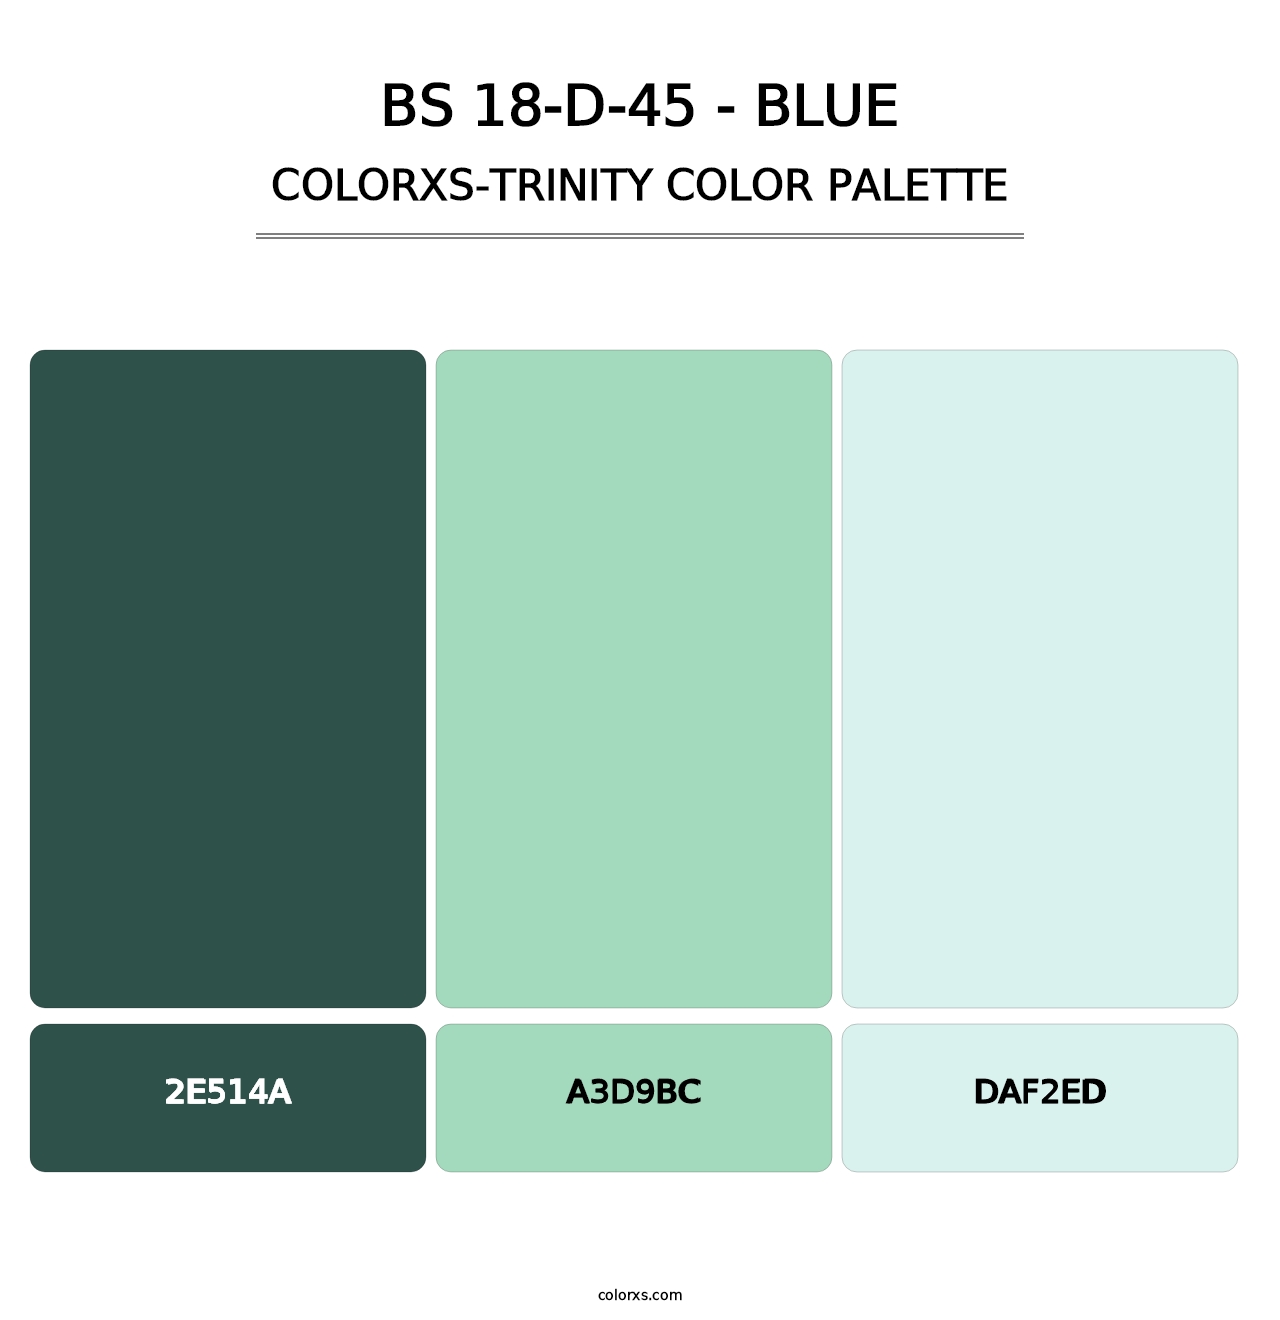 BS 18-D-45 - Blue - Colorxs Trinity Palette